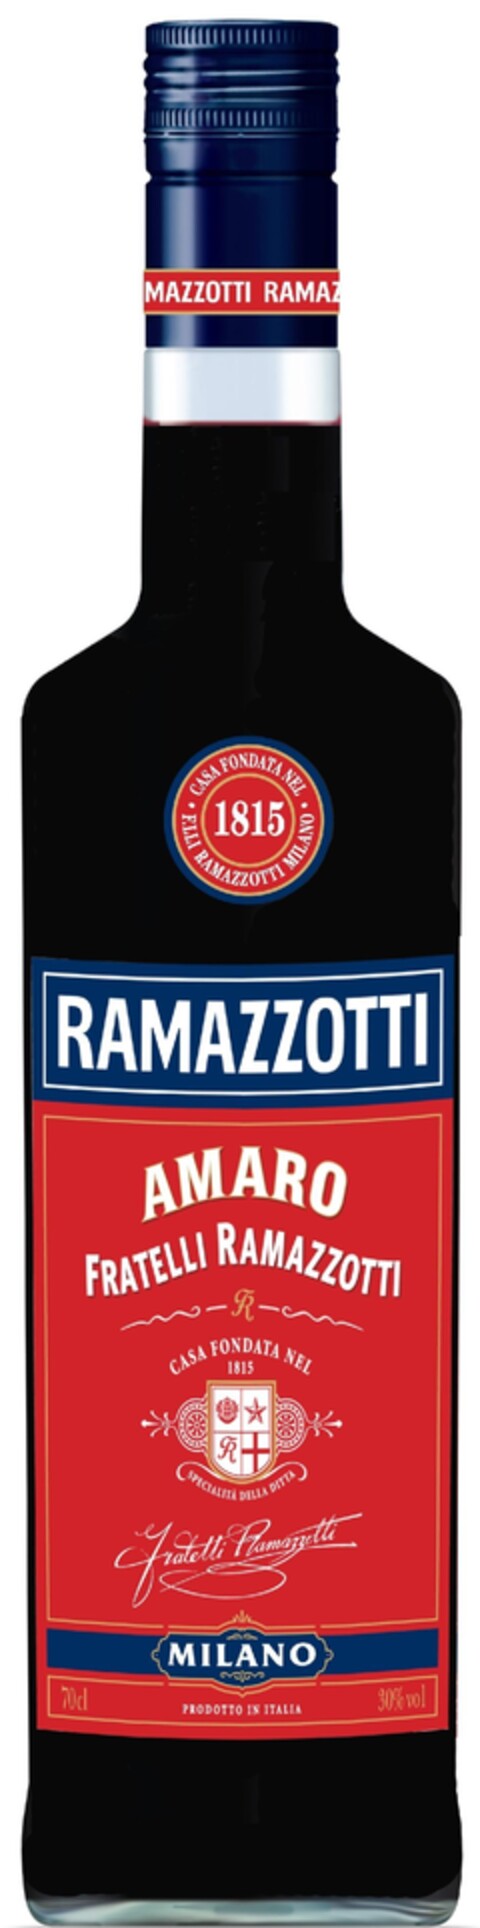 Ramazzotti, Casa Fondata Nel 1815, F.lli Ramazzotti Milano  Amaro, Fratelli Ramazzotti, Specialiata Della Dittta Milano Prodotti in Italia 70cl 30% vol Logo (EUIPO, 25.03.2011)